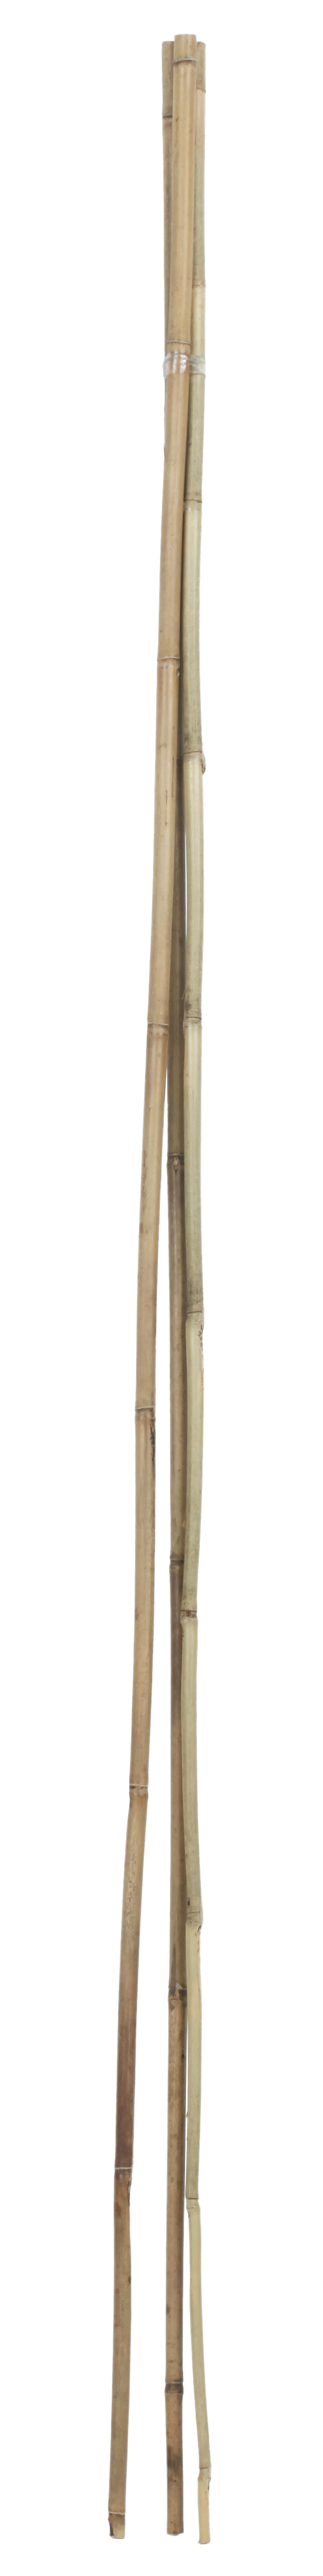 Soporte para plantar de bambú de 1.2m de alto y 10 mm de diámetro